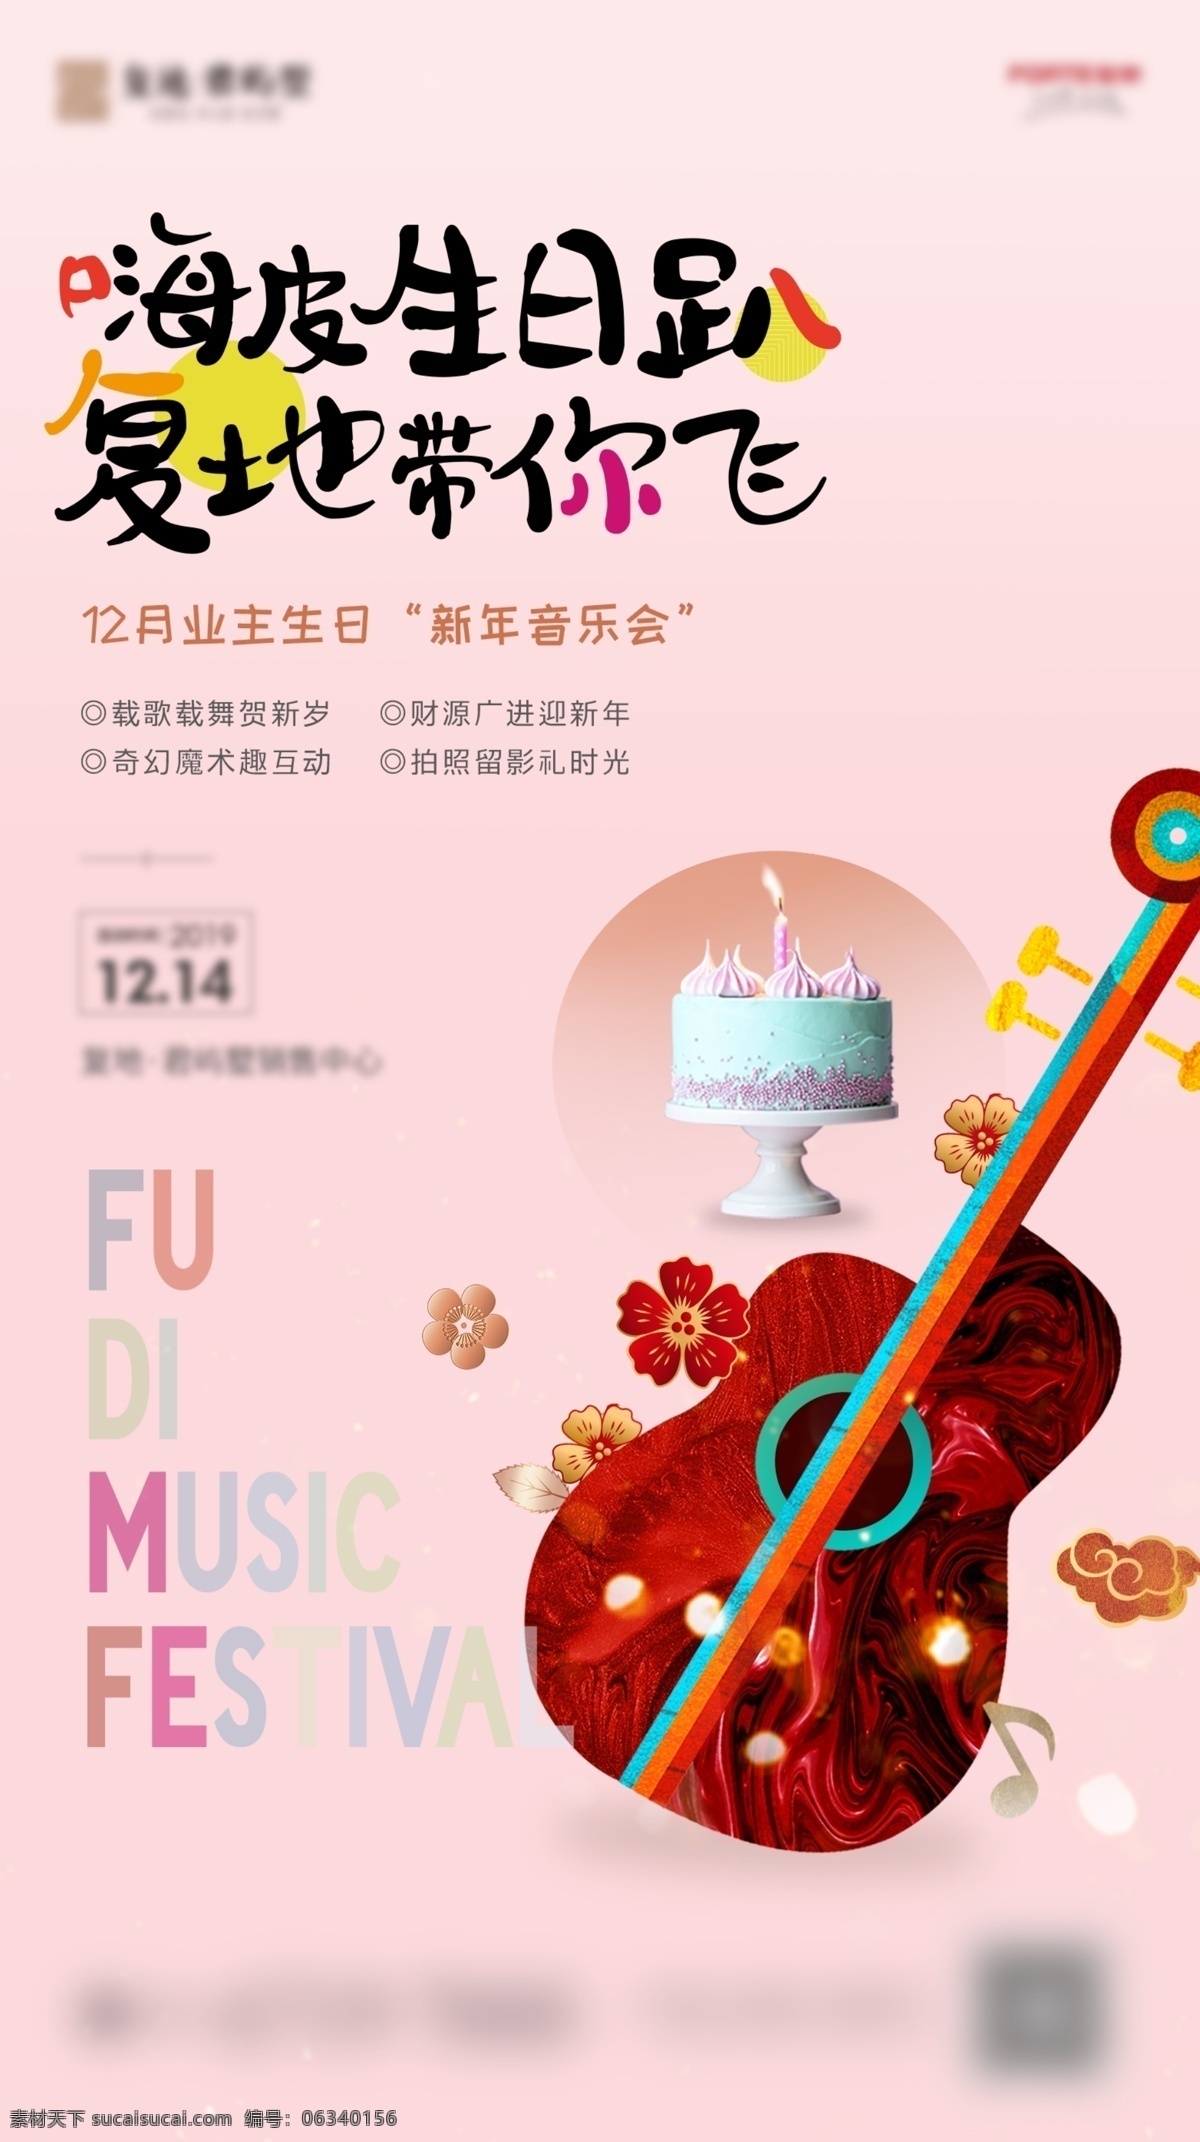 音乐生日会 地产 音乐会 生日会 新中式 活动 吉他 蛋糕